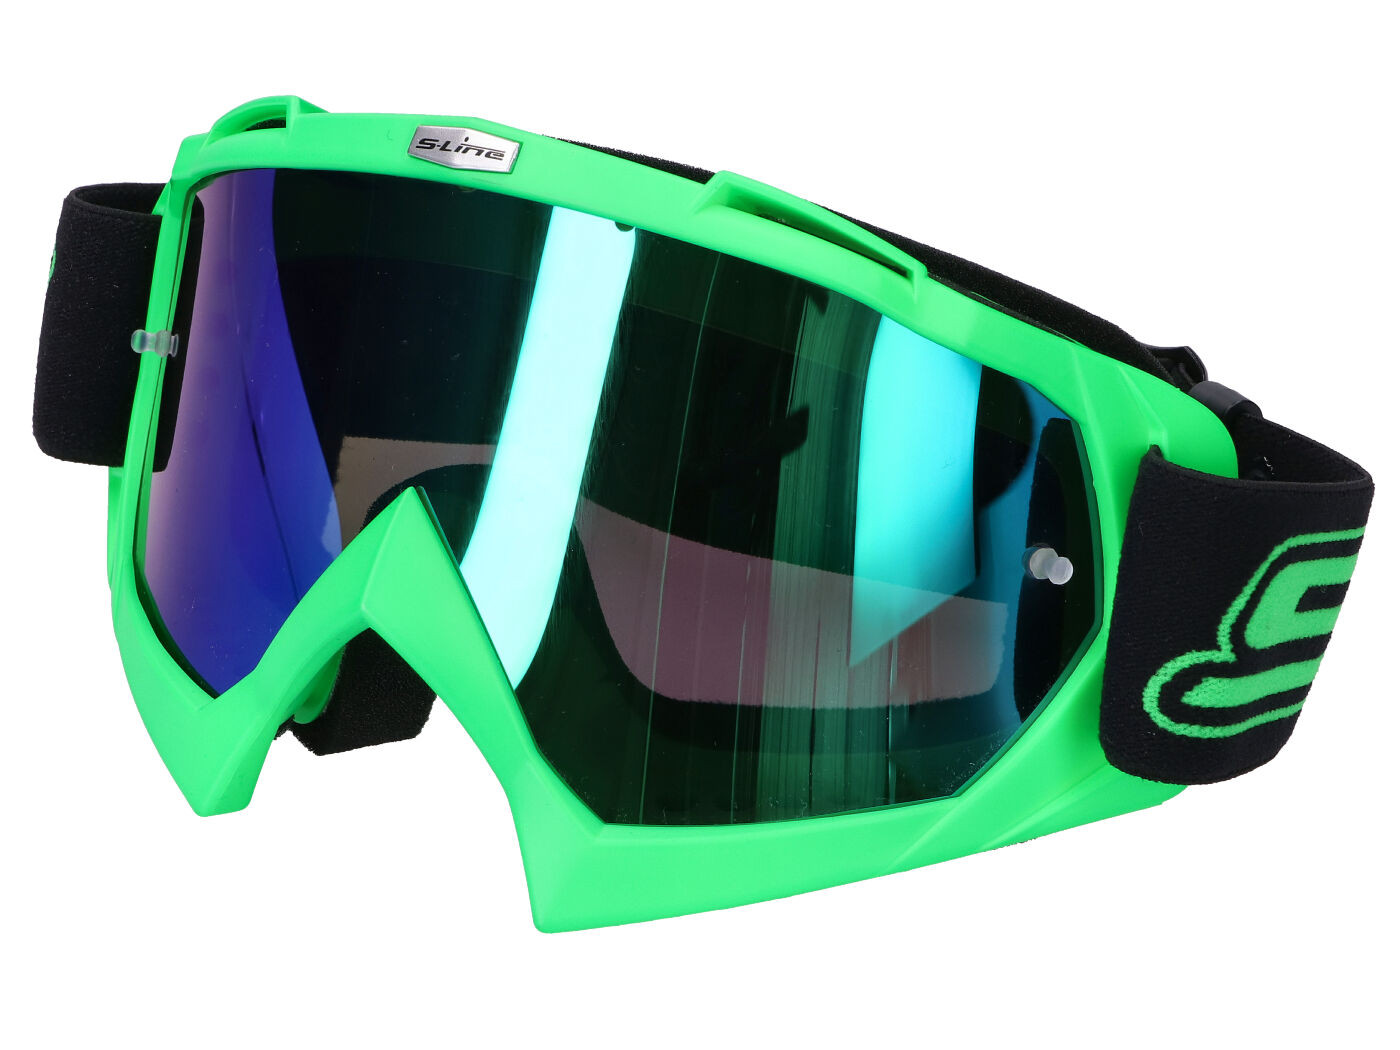 MX Szemüveg S-Line zöld - Irídium kék